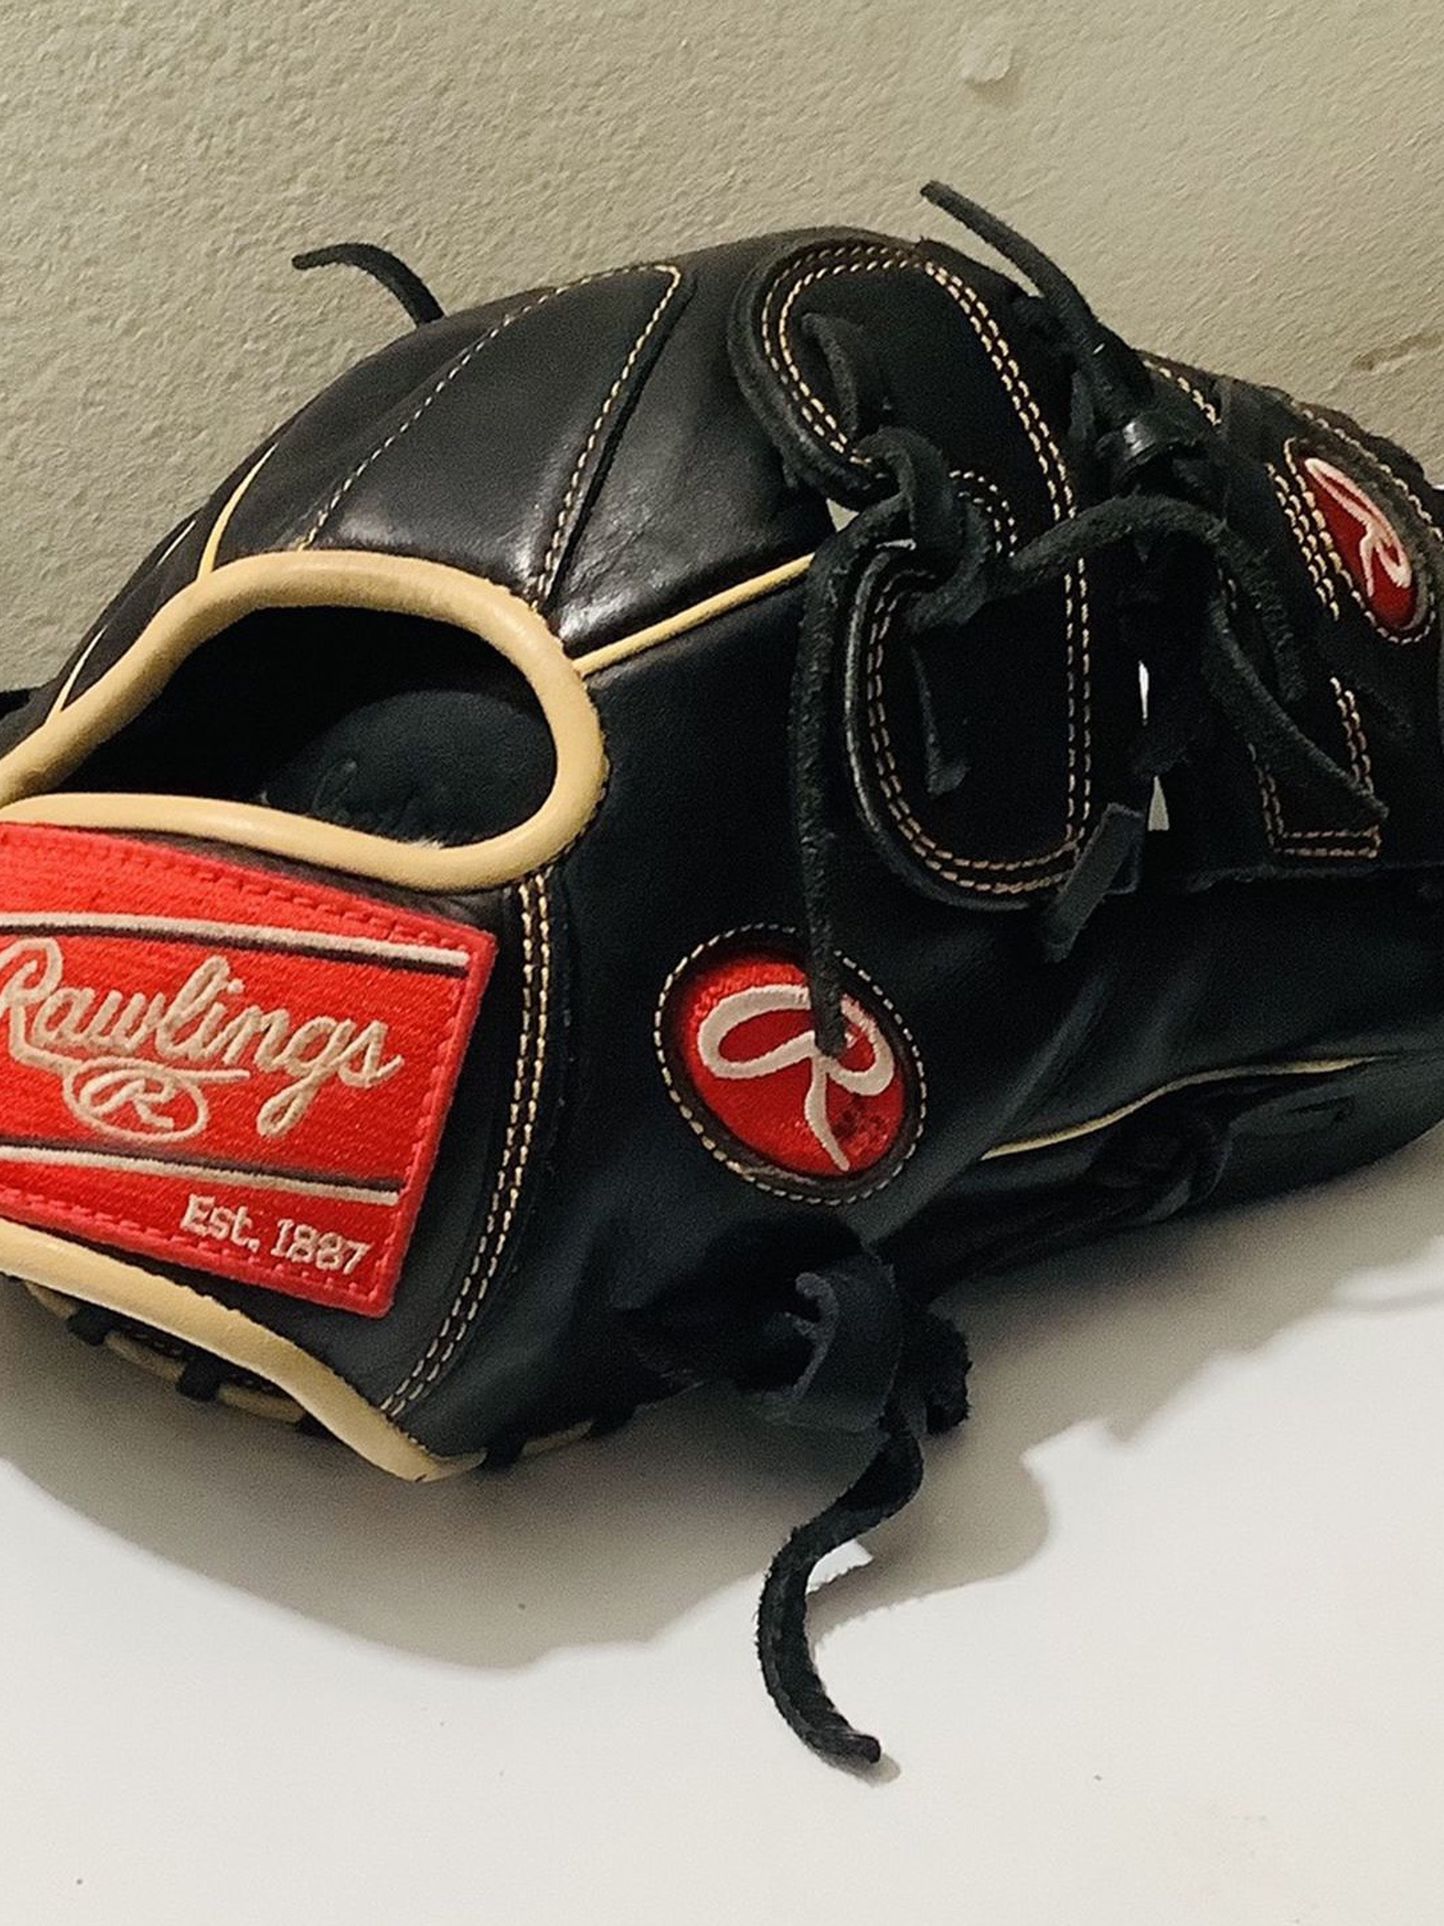 Rawlings Pitcher Baseball Glove